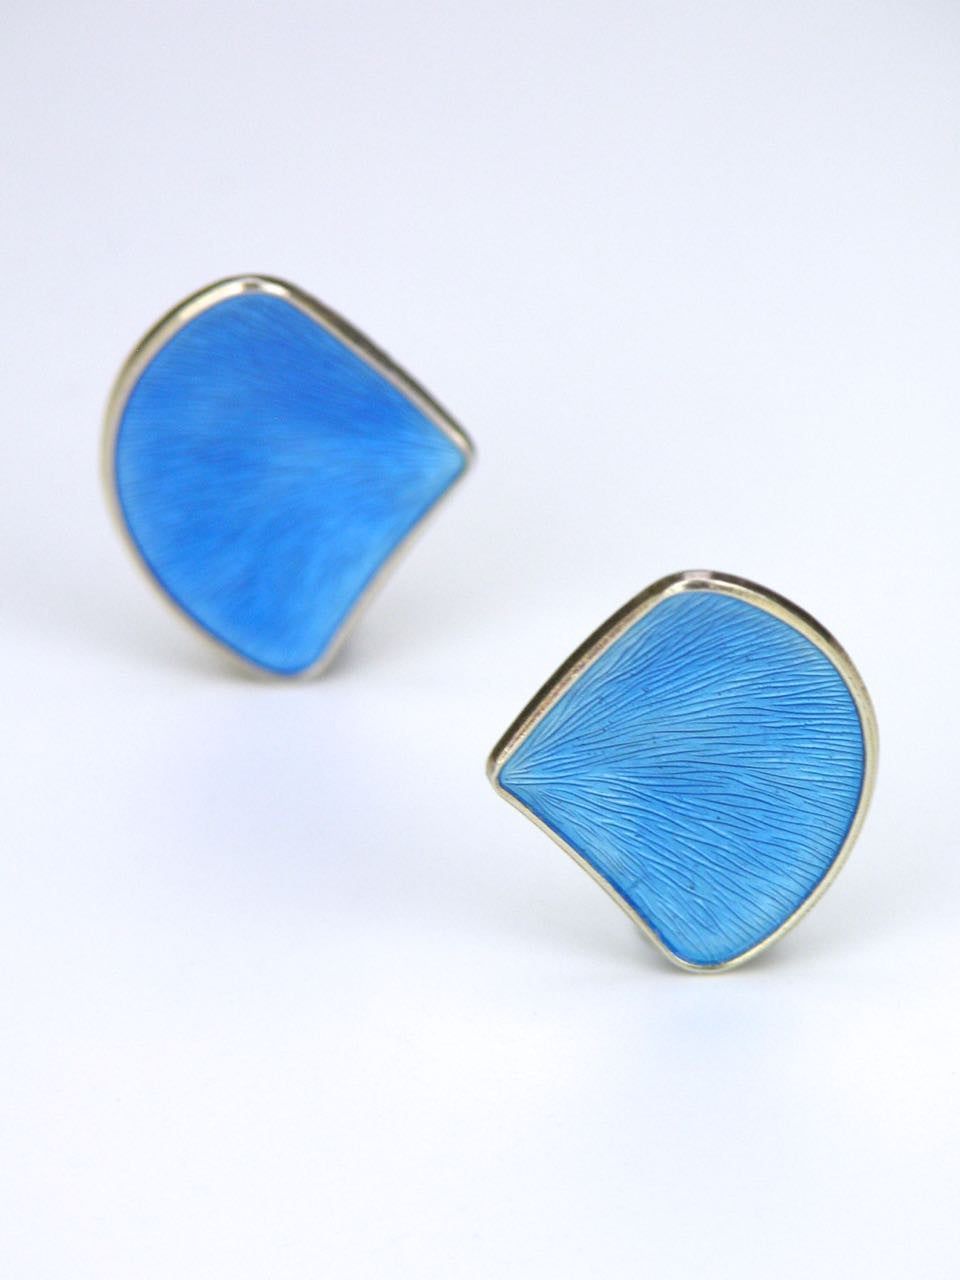 Norwegian silver and sky blue enamel fan clip earrings